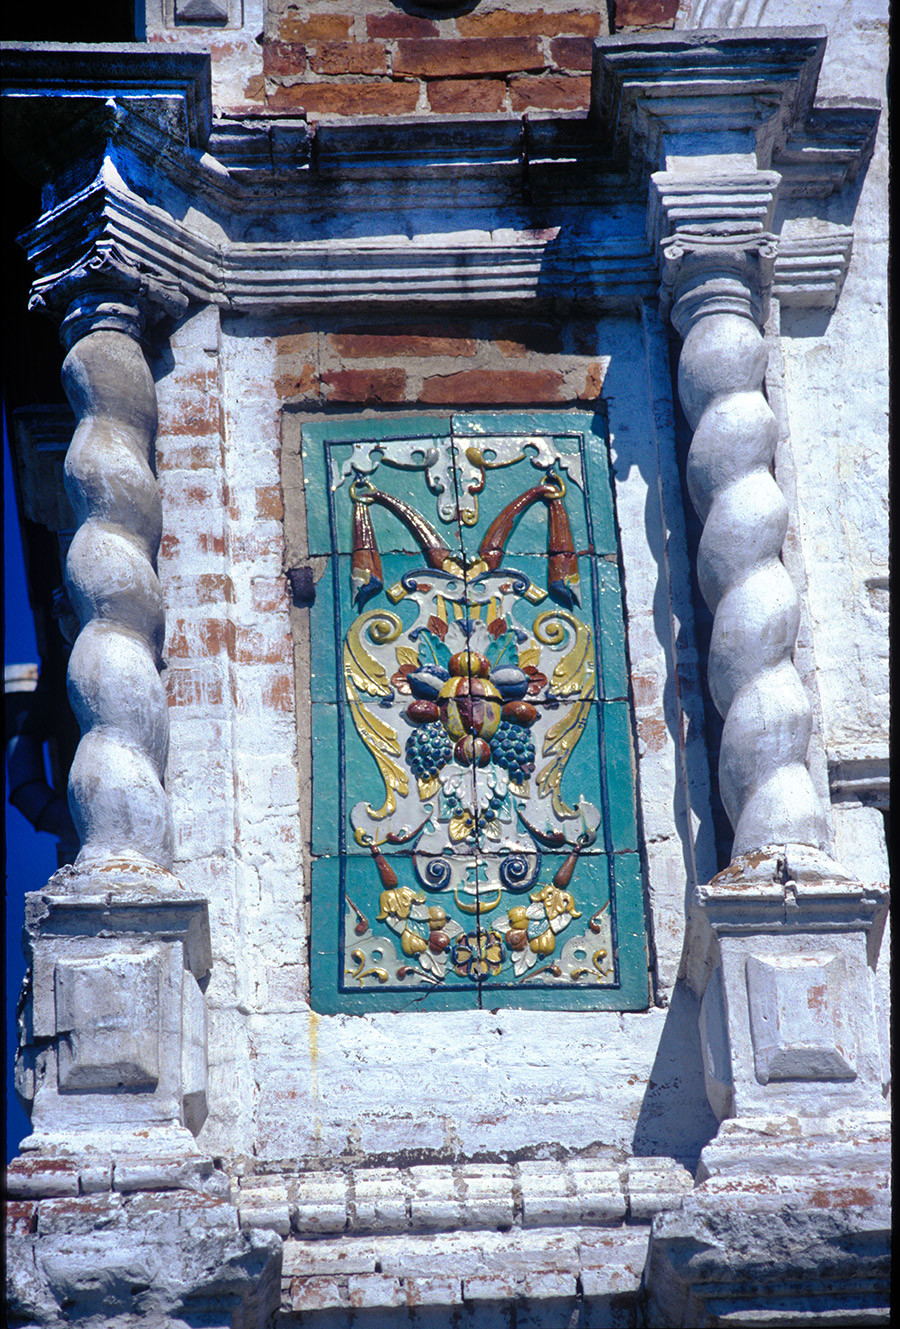 Cathédrale de la Présentation. Façade ouest avec panneau de céramique. 26 juin 1999
